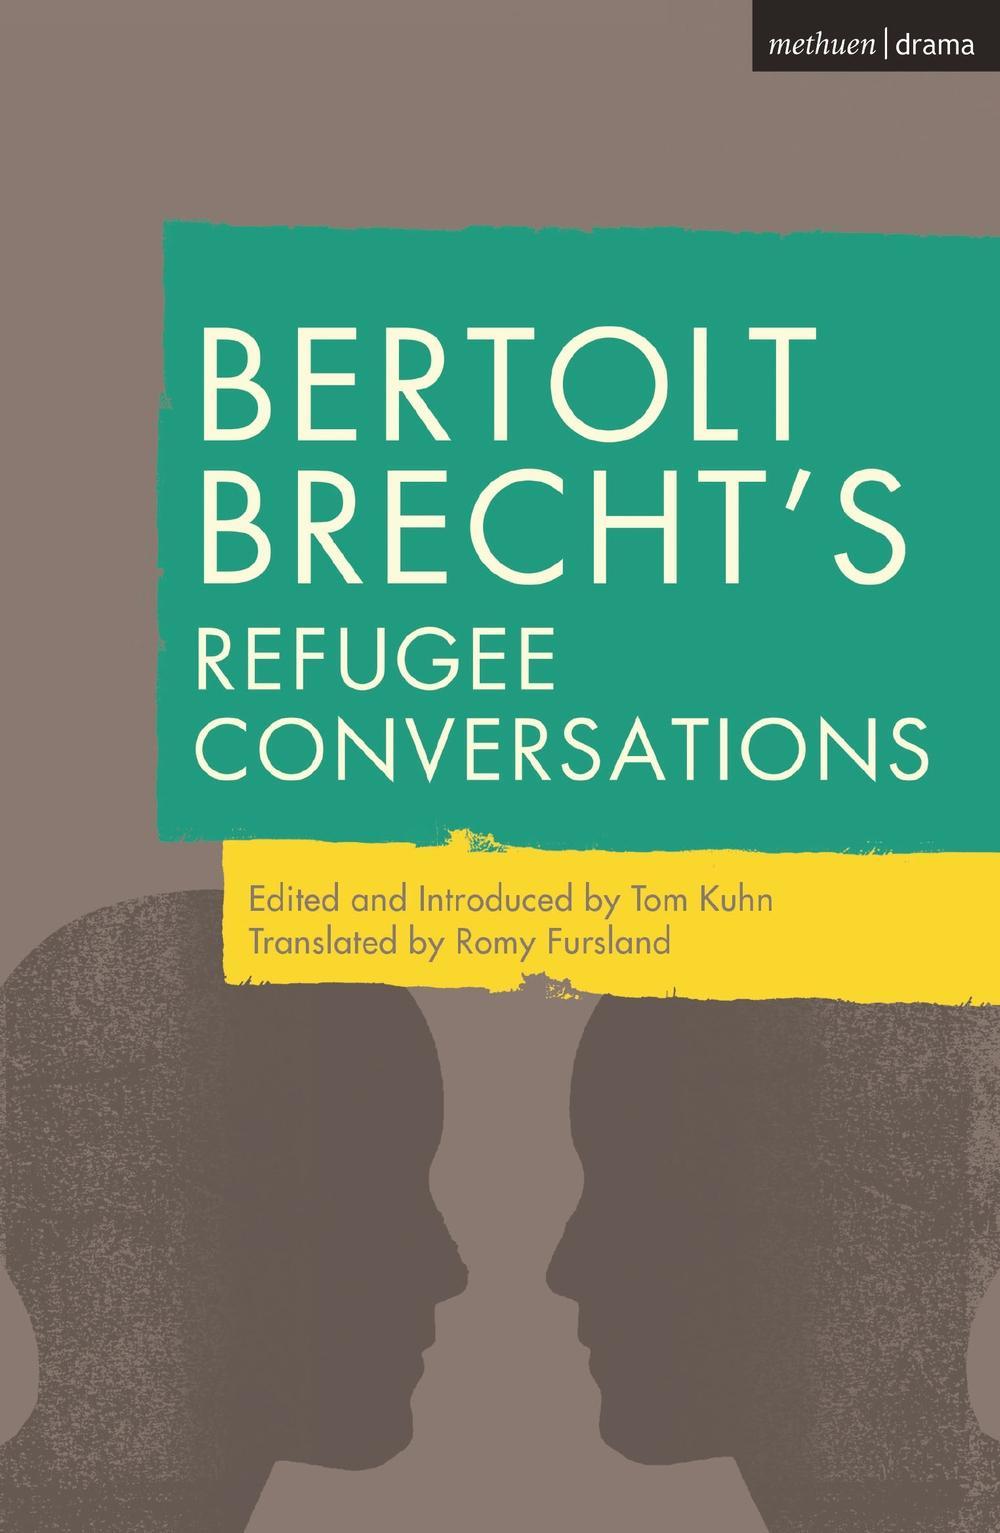 Bertolt Brecht's Refugee Conversations - Bertolt Brecht